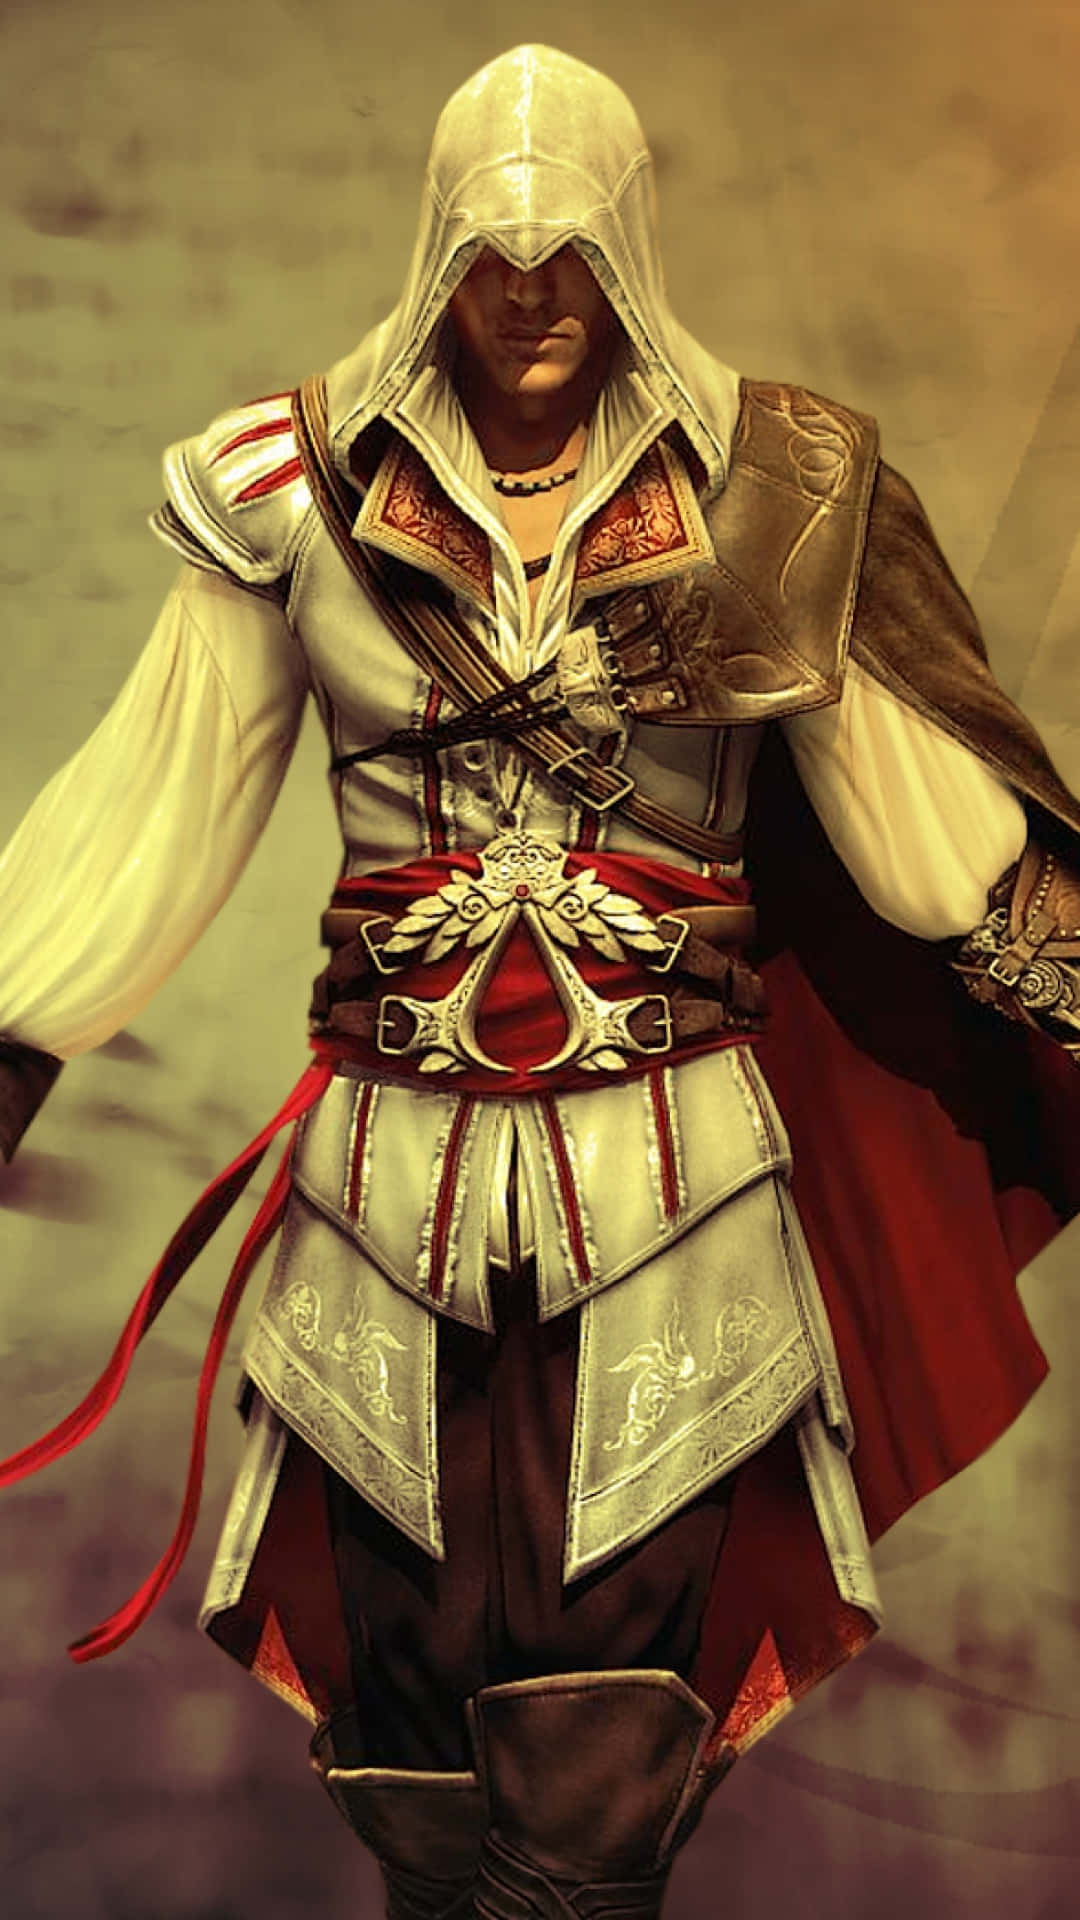 Sconfiggii Tuoi Nemici In Assassin's Creed Valhalla, Ora Disponibile Per Iphone X.